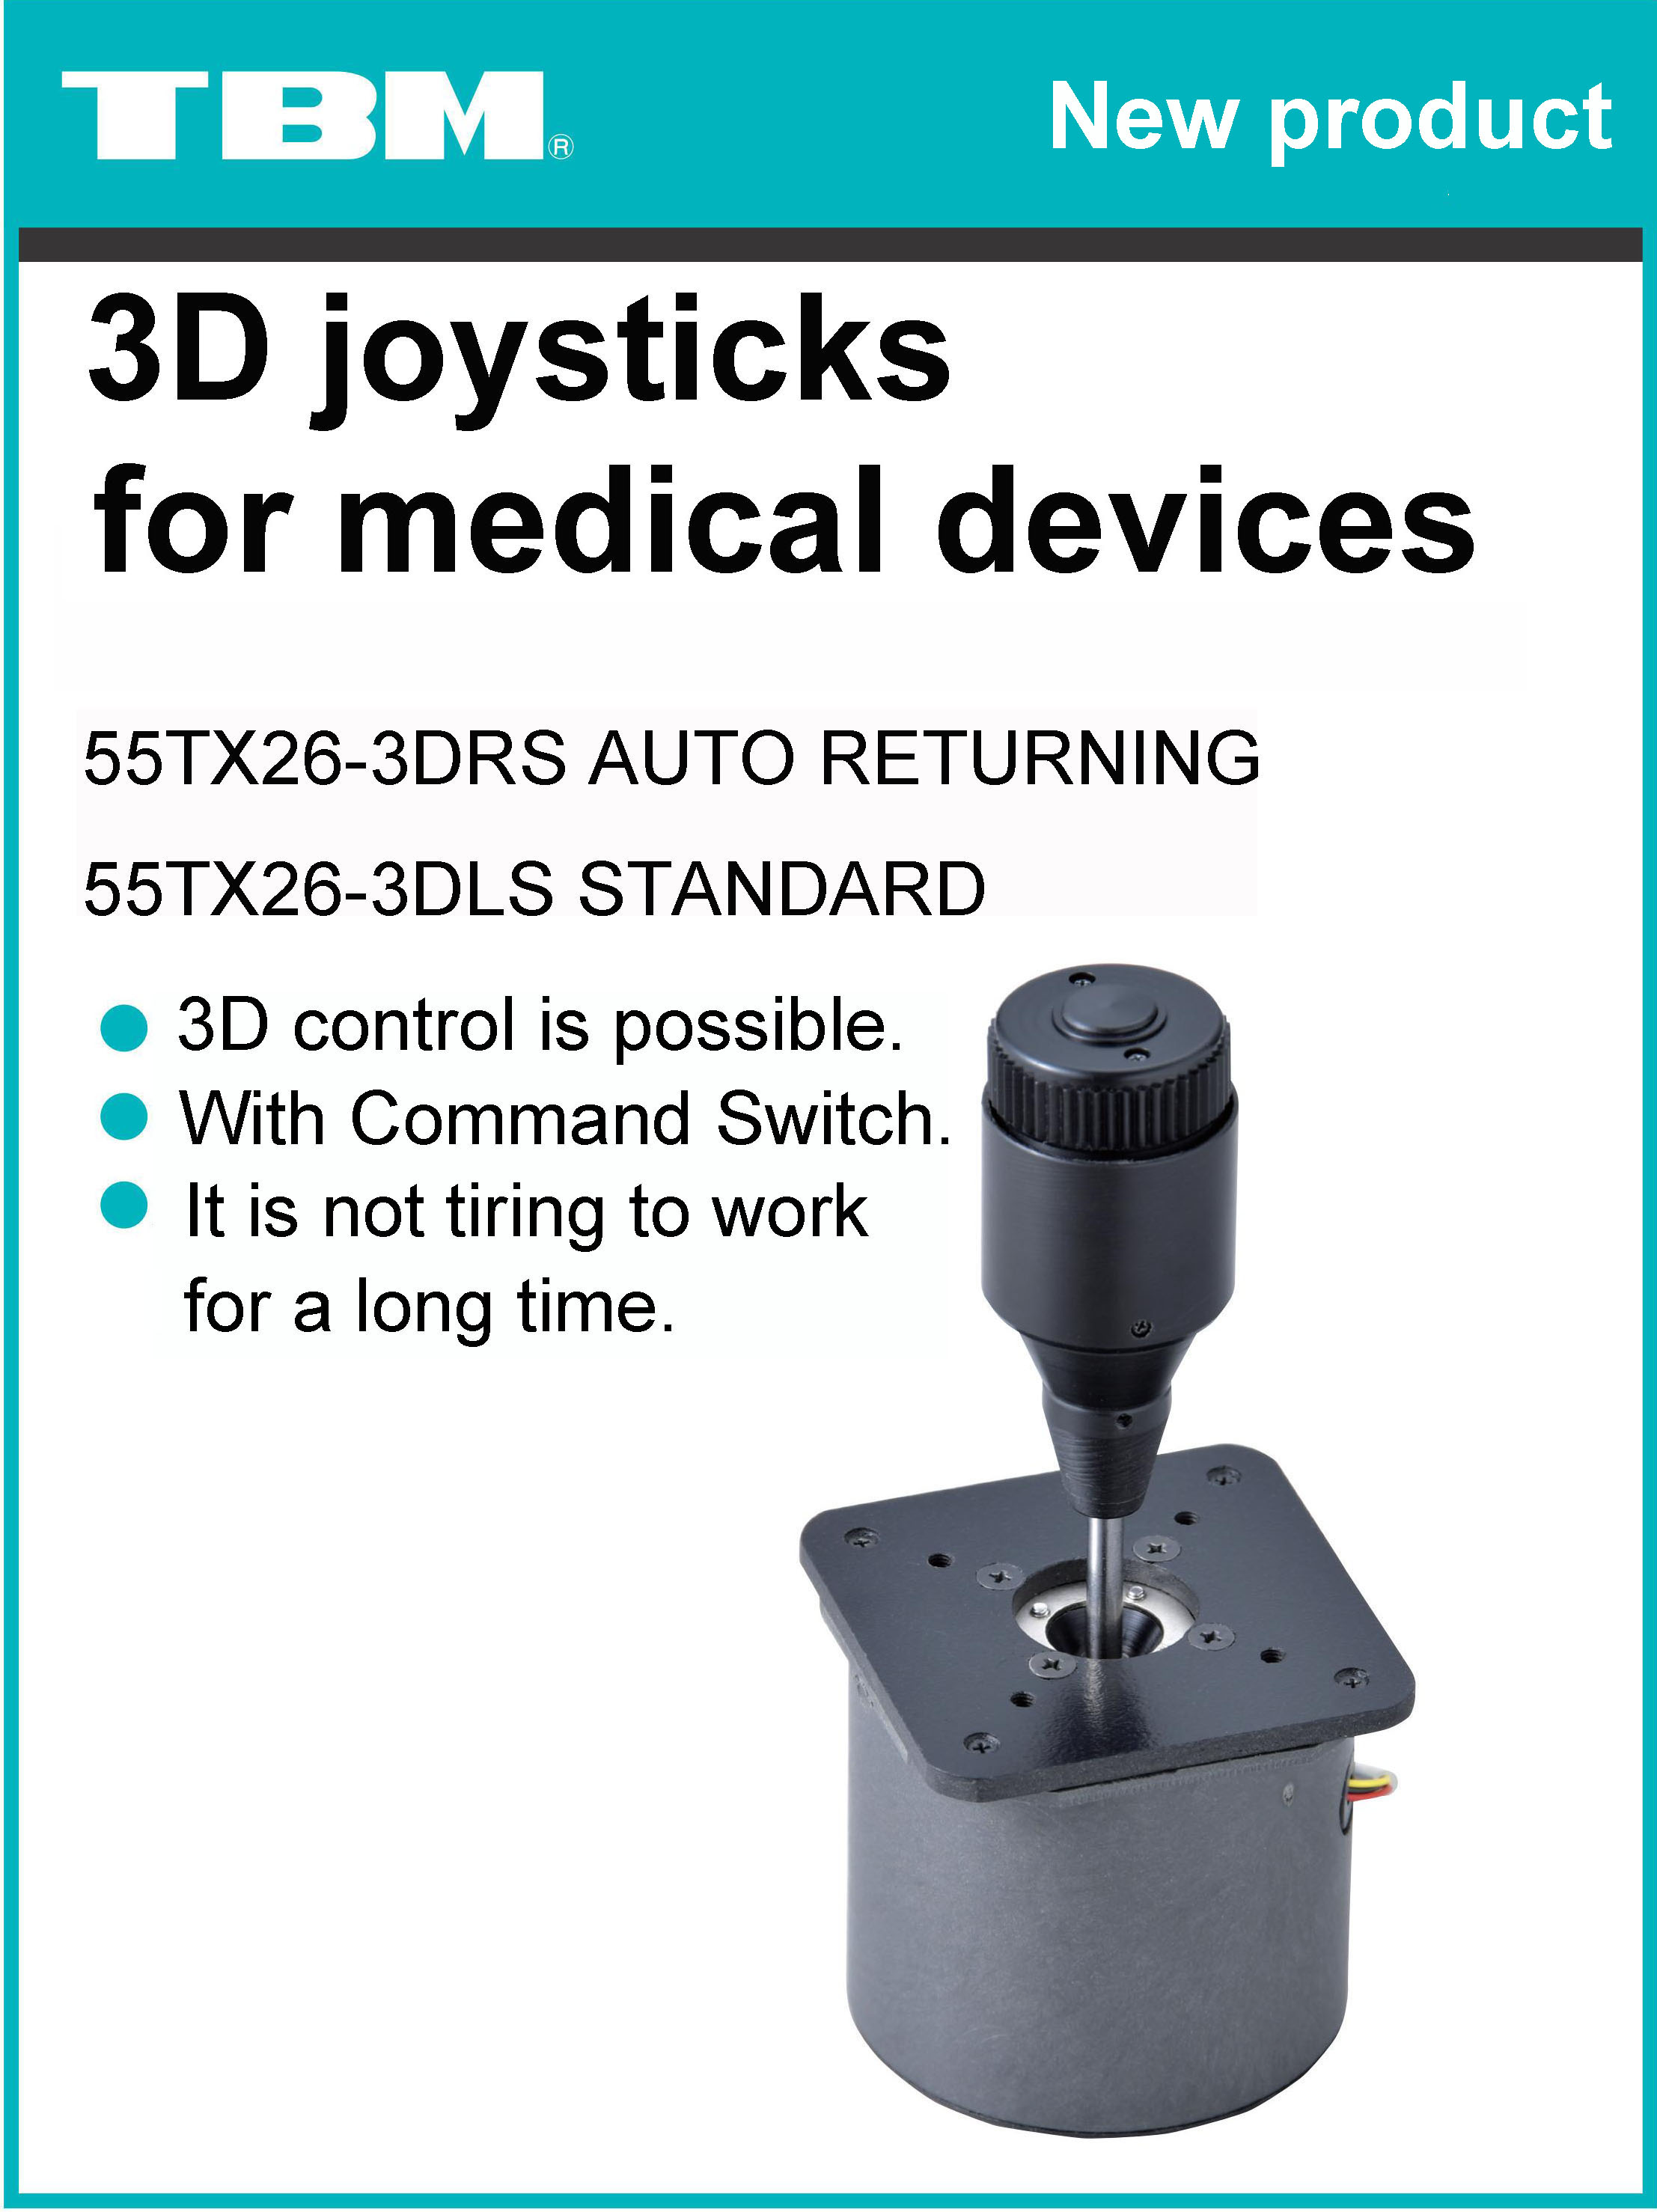 Joysticks for medical devices